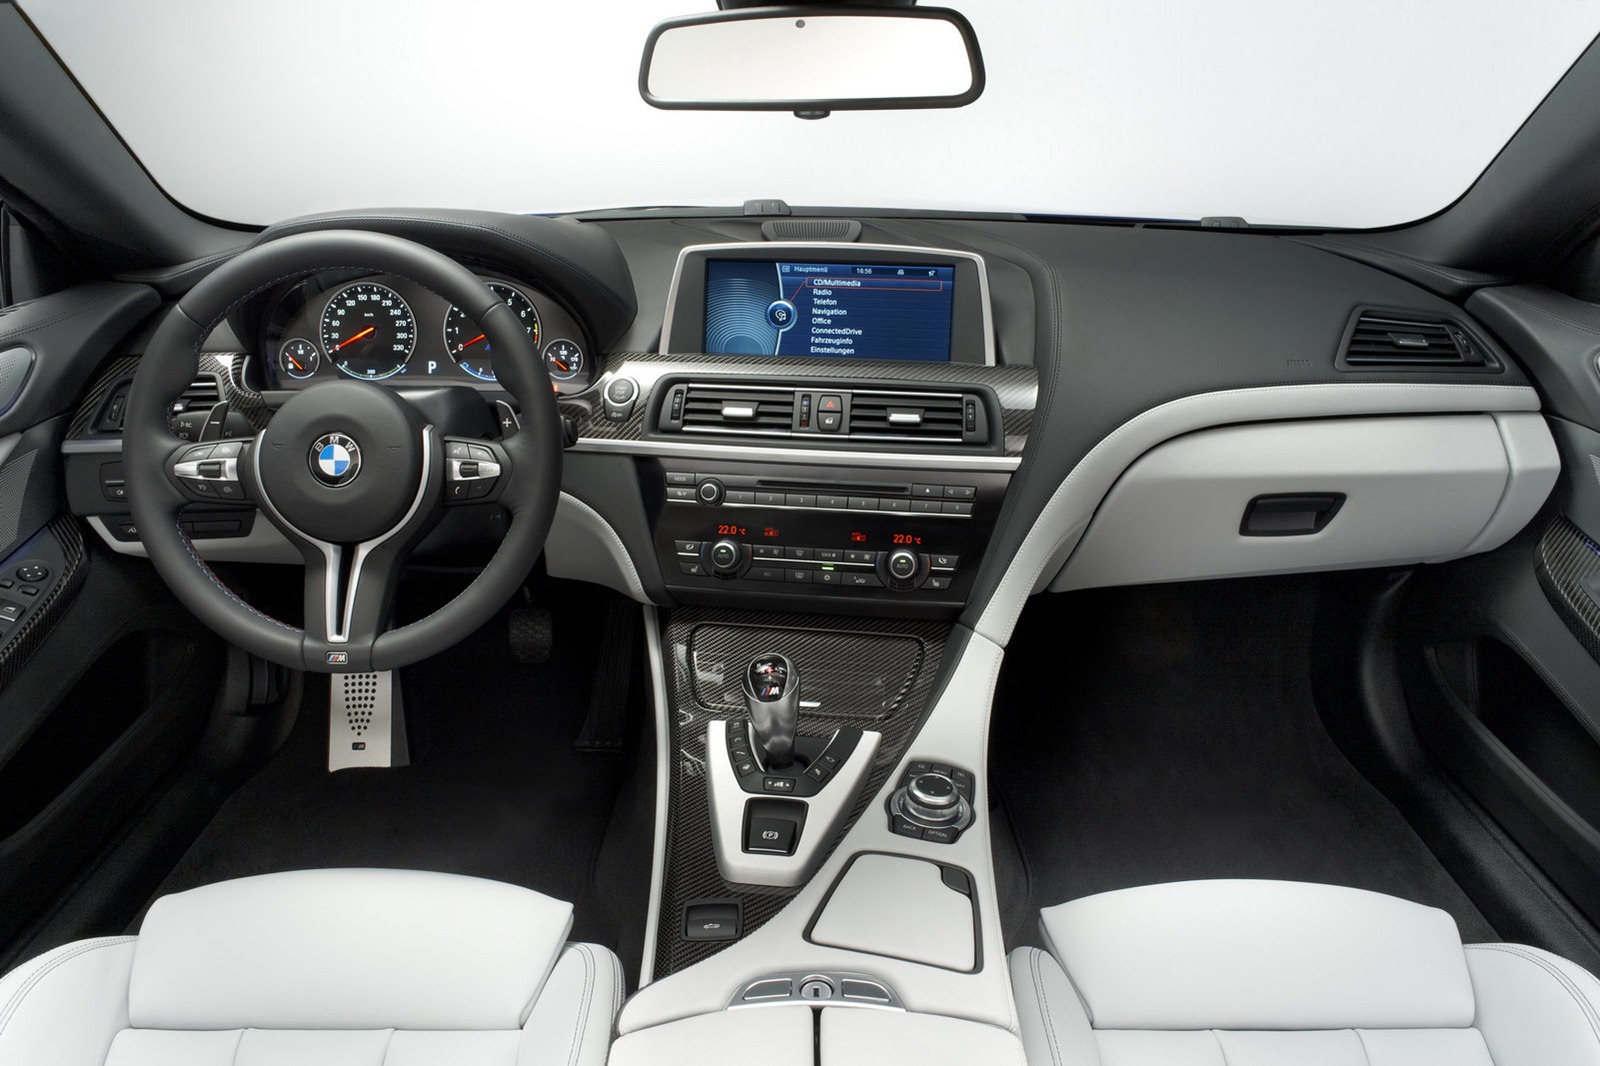 بي ام دبليو ام سكس 2013 تعرض قبل معرض جنيف الدولي للسيارات BMW M6 2013 5